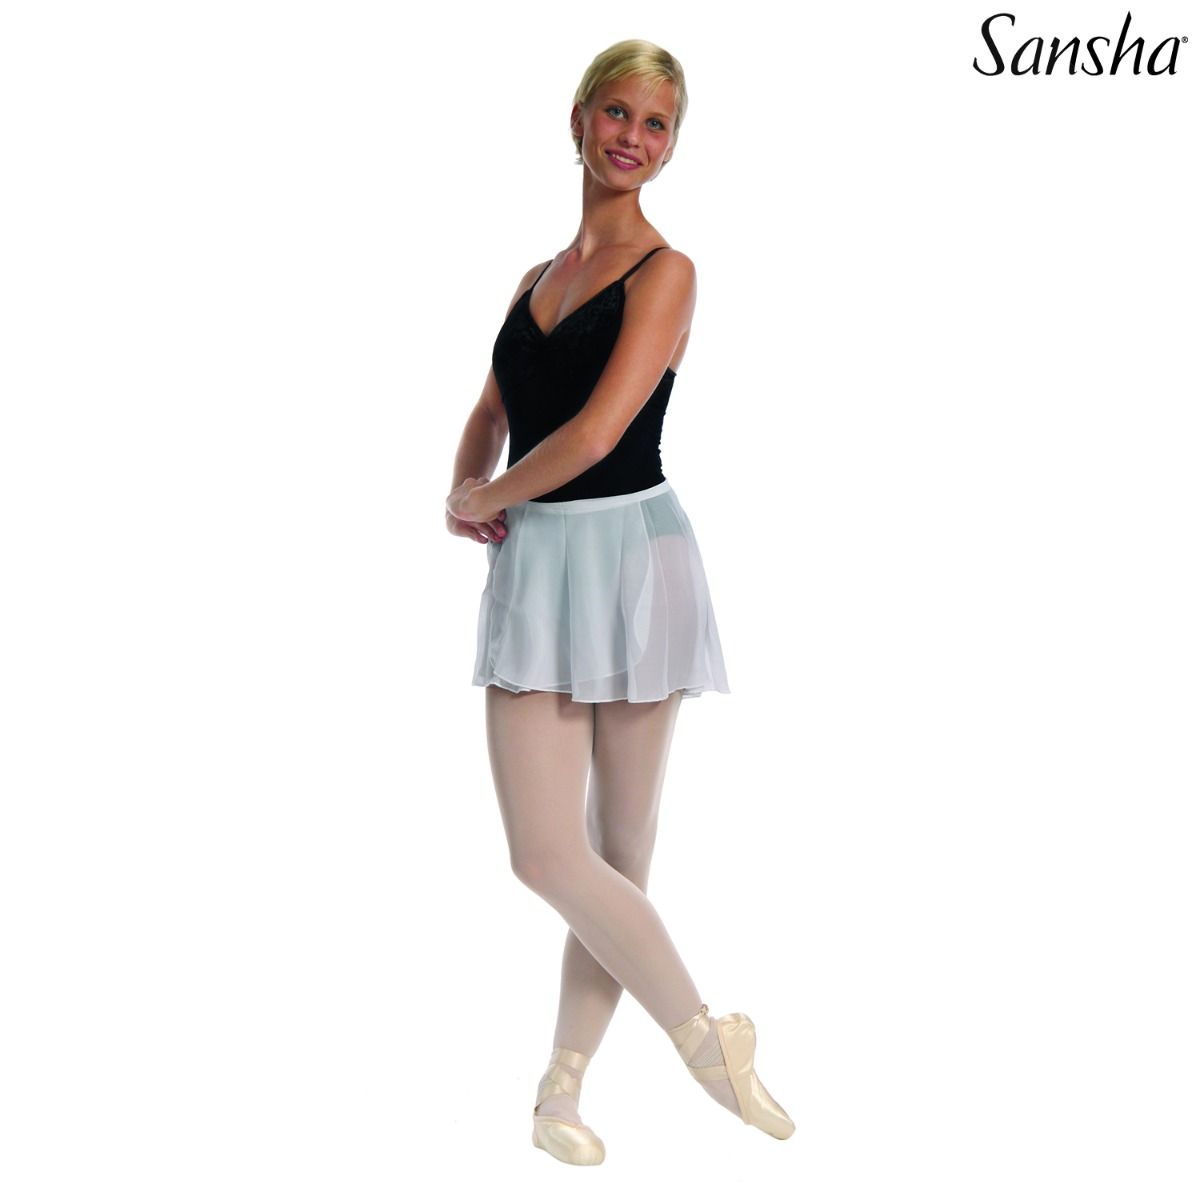 Sansha, "pale blue" balettihame, Zephyr